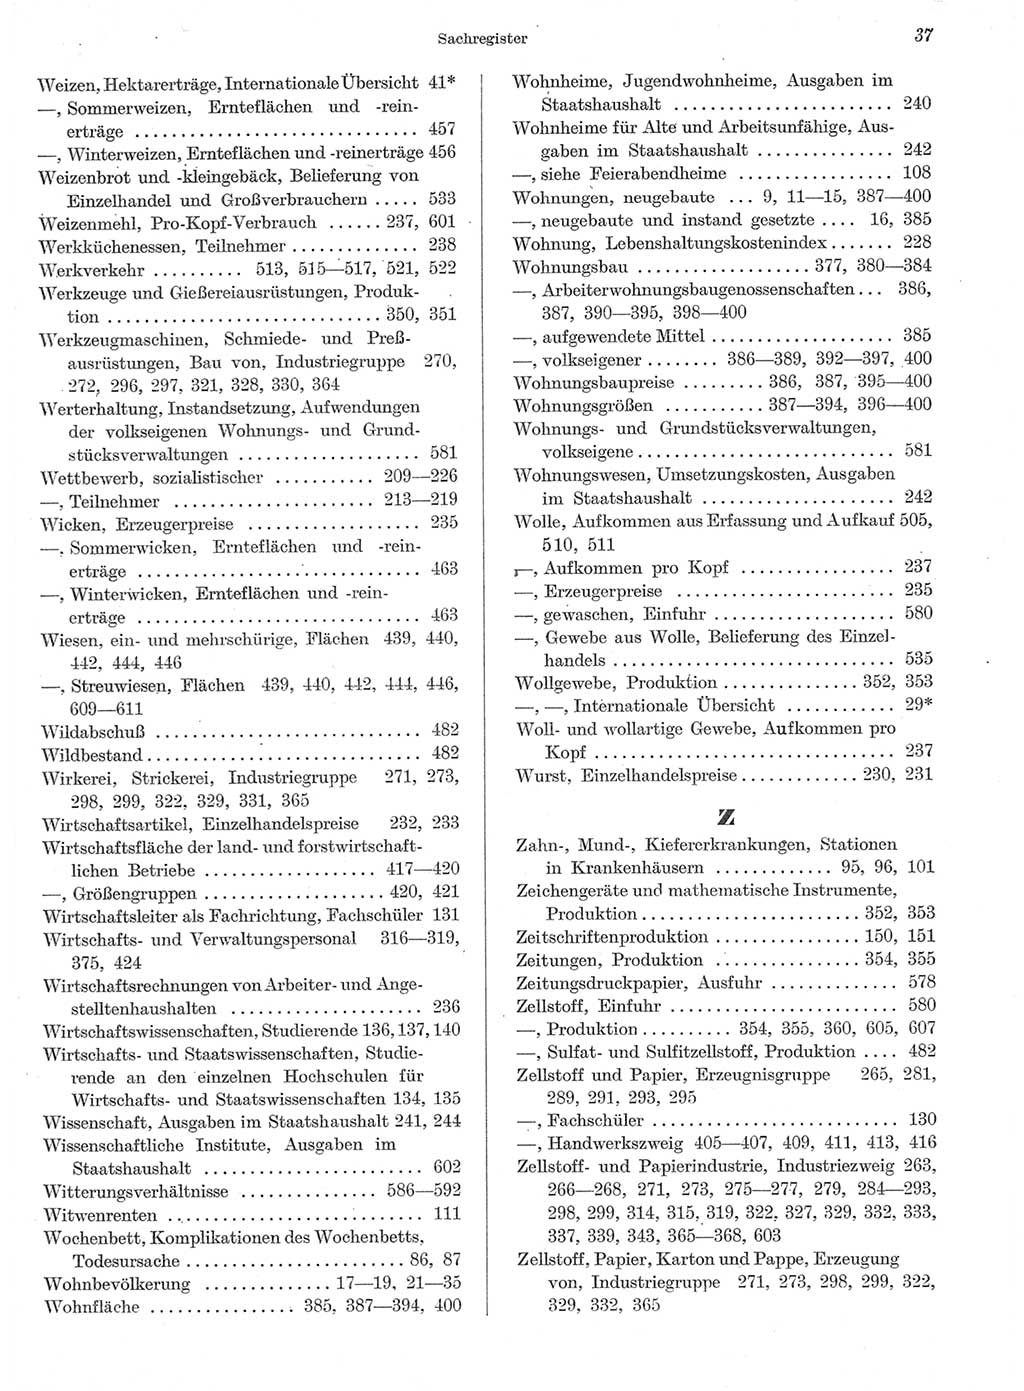 Statistisches Jahrbuch der Deutschen Demokratischen Republik (DDR) 1959, Seite 37 (Stat. Jb. DDR 1959, S. 37)